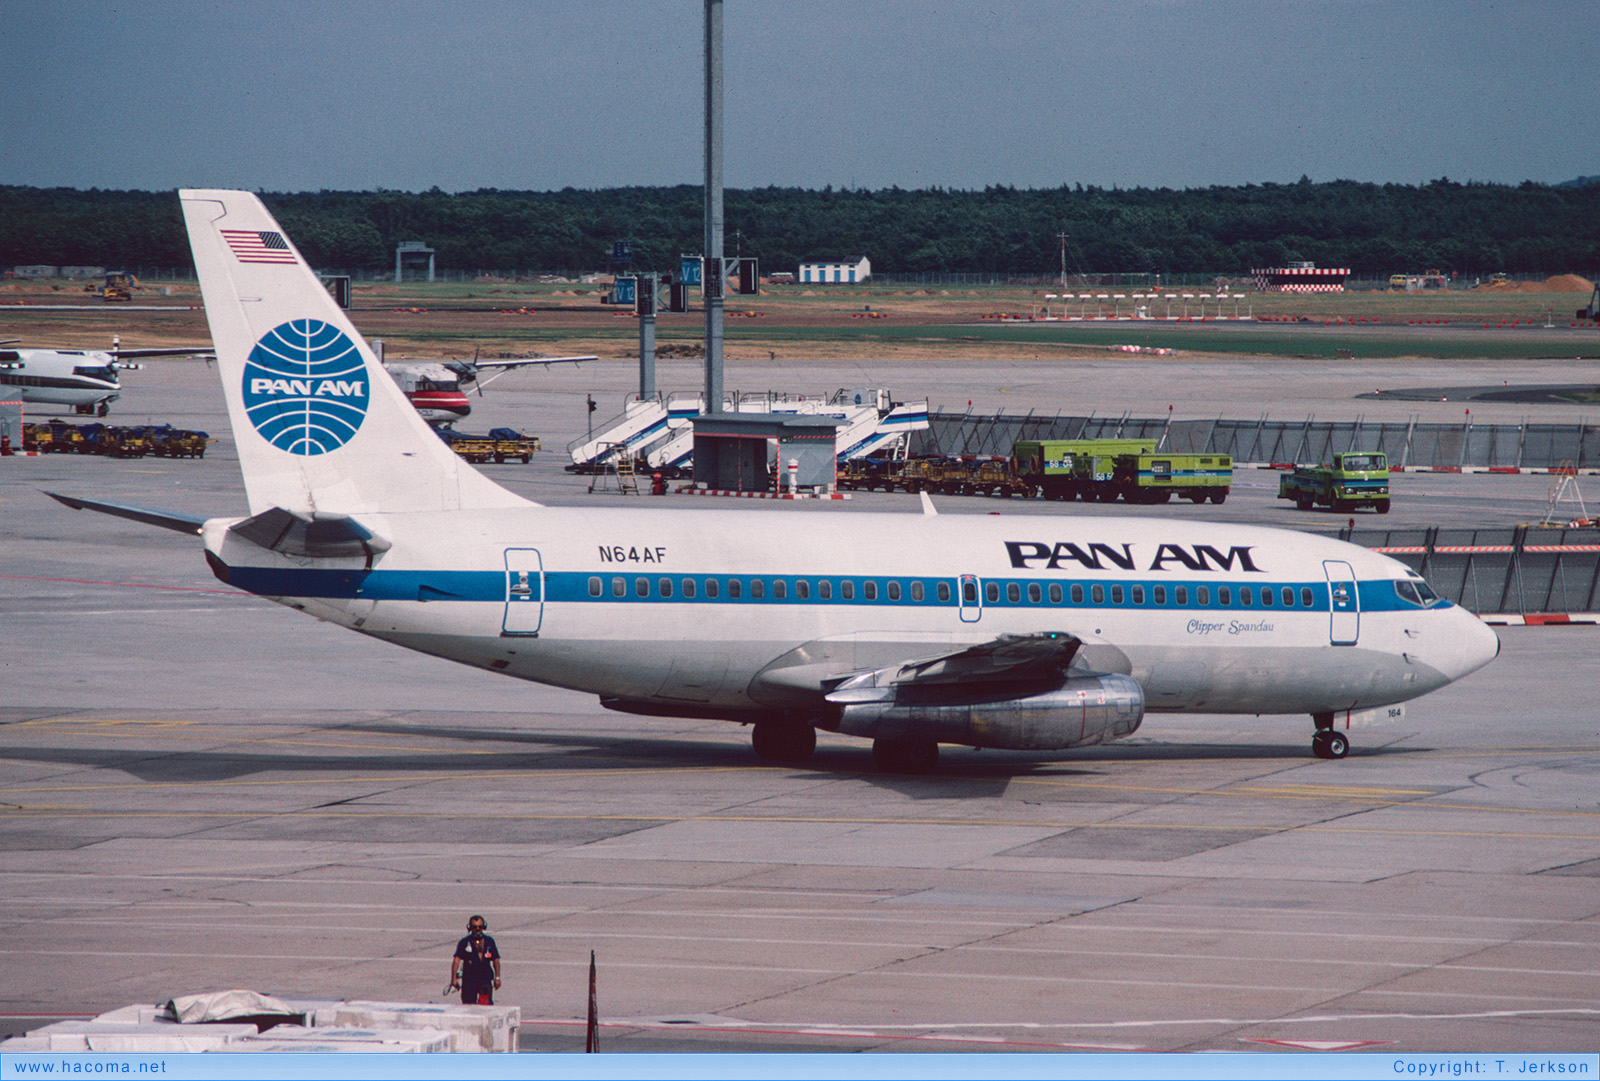 Foto von N64AF - Pan Am Clipper Spandau / San Diego / Morning Glory - Flughafen Frankfurt am Main - 1985